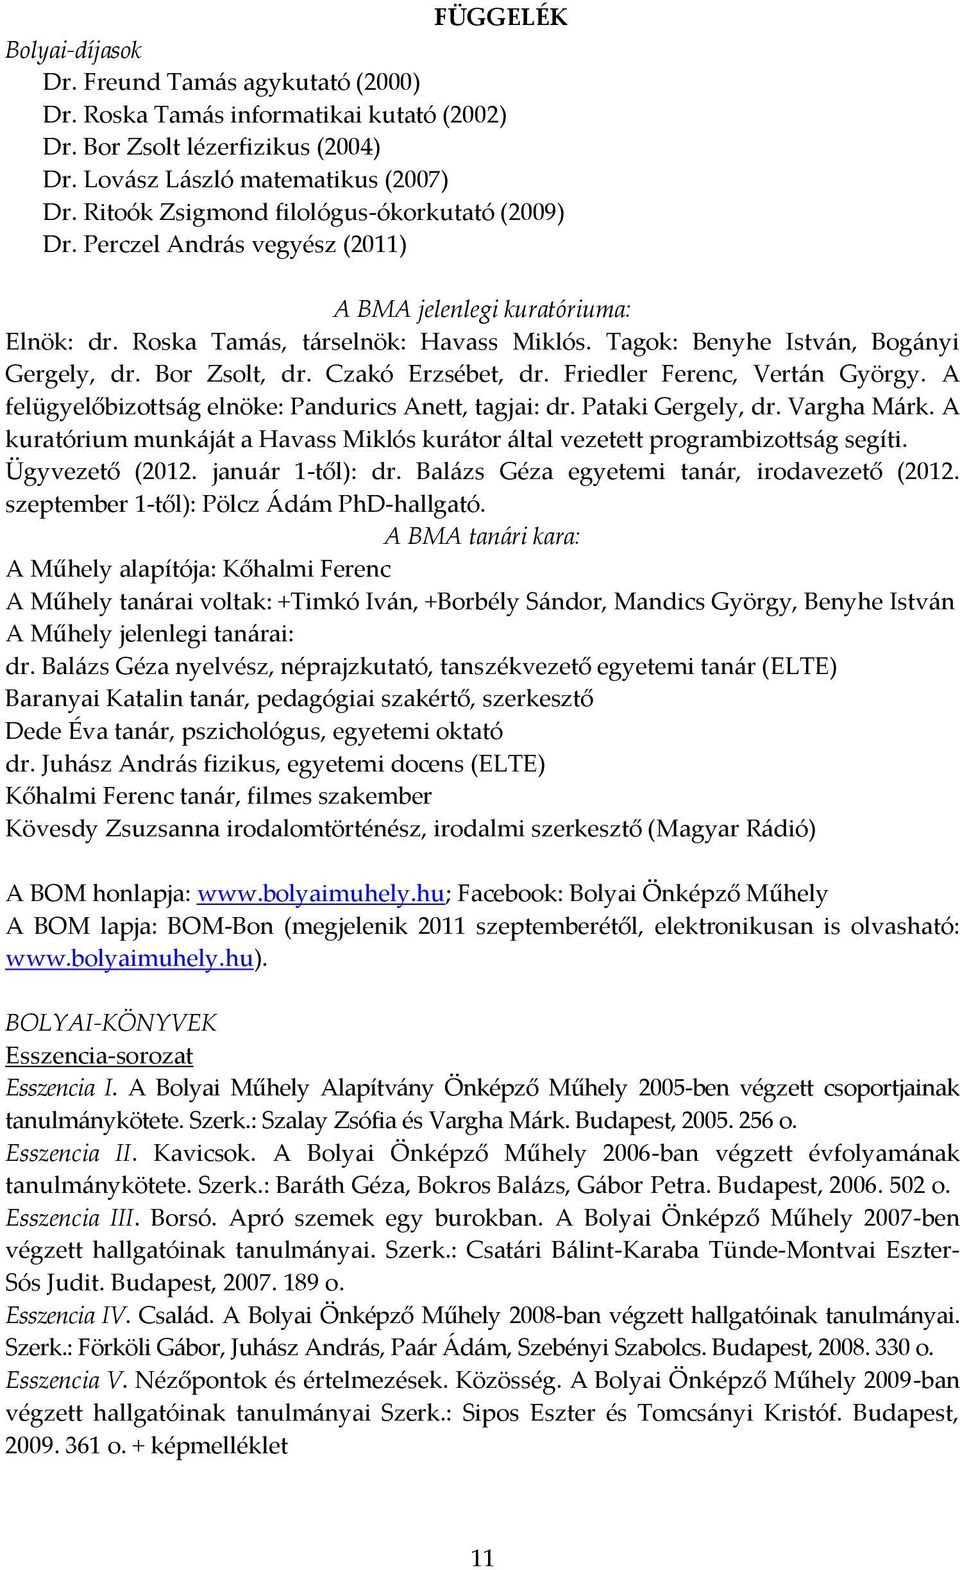 BALÁZS GÉZA Egy tehetségfejlesztő program: Bolyai Önképző Műhely - PDF Free  Download